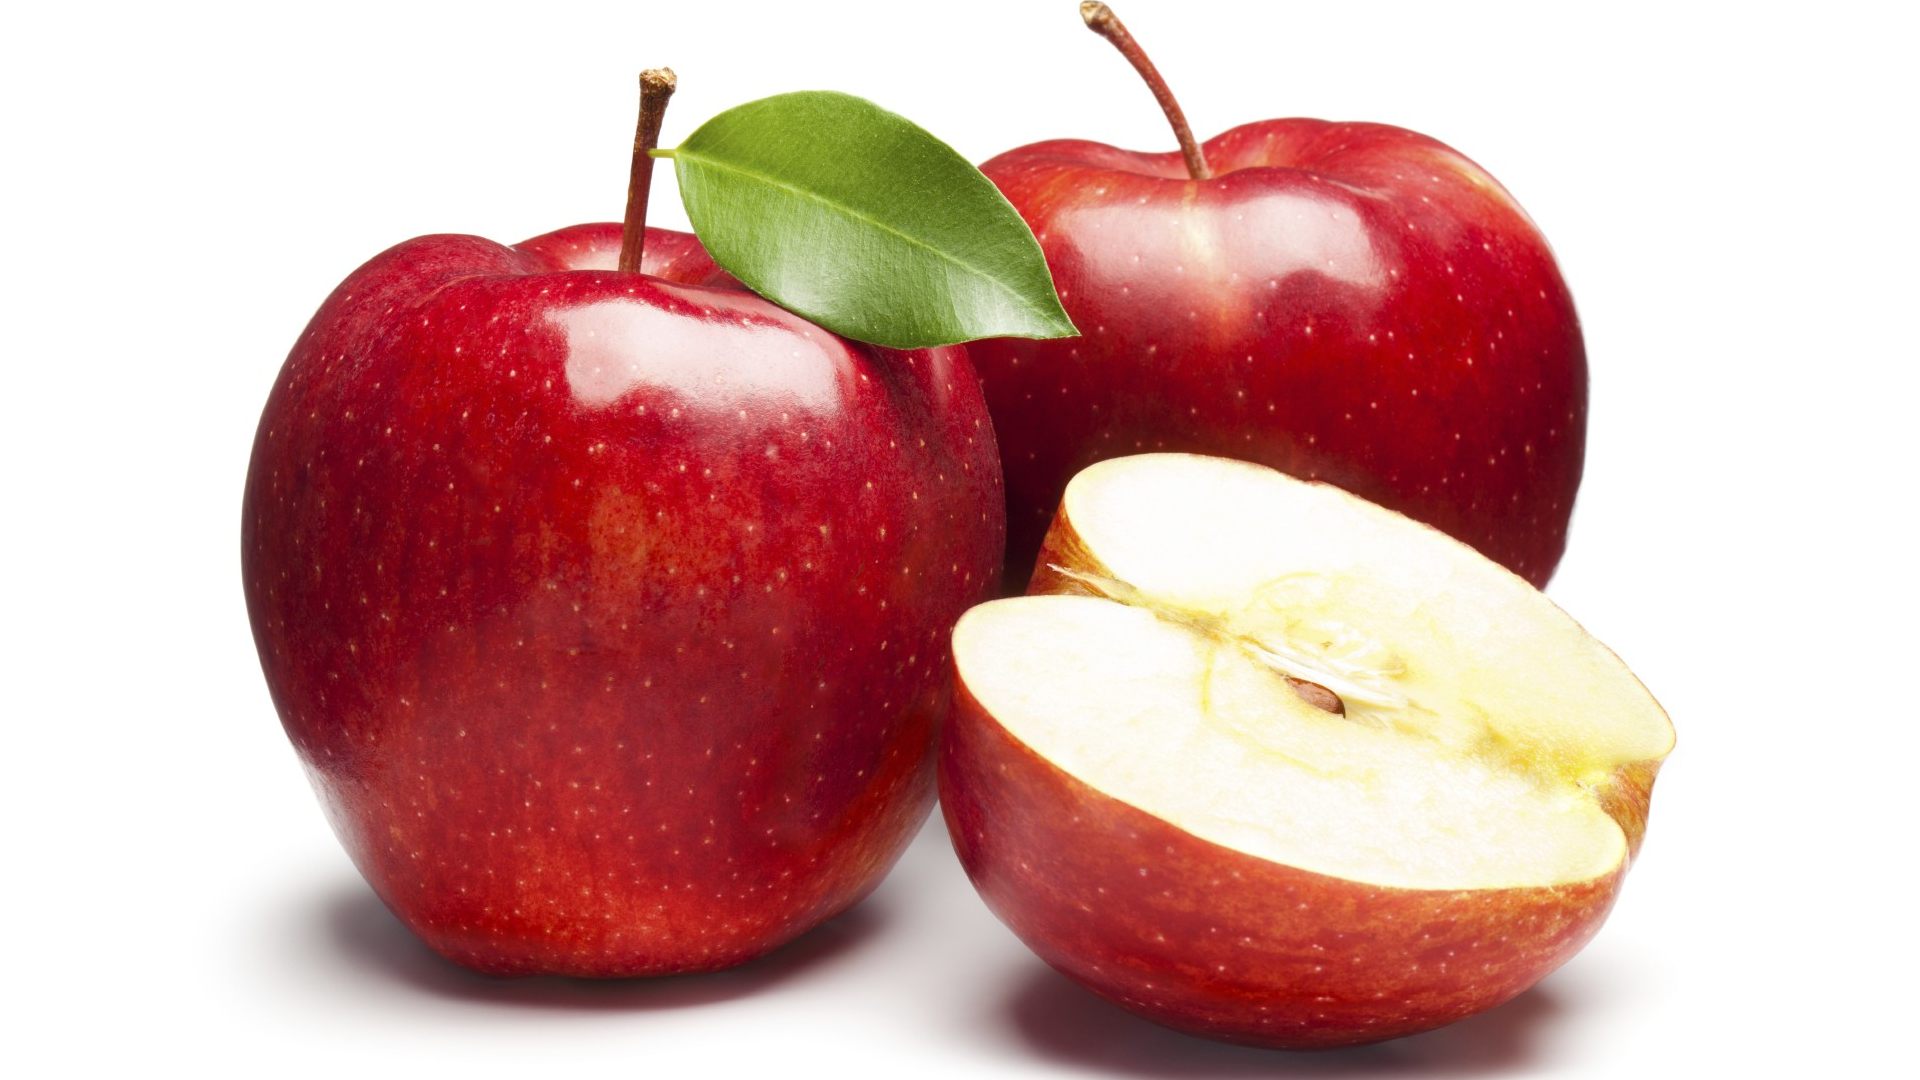 ΗΠΑ: Πρόστιμο 500 δολαρίων σε γυναίκα, επειδή ξέχασε να δηλώσει ένα μήλο!